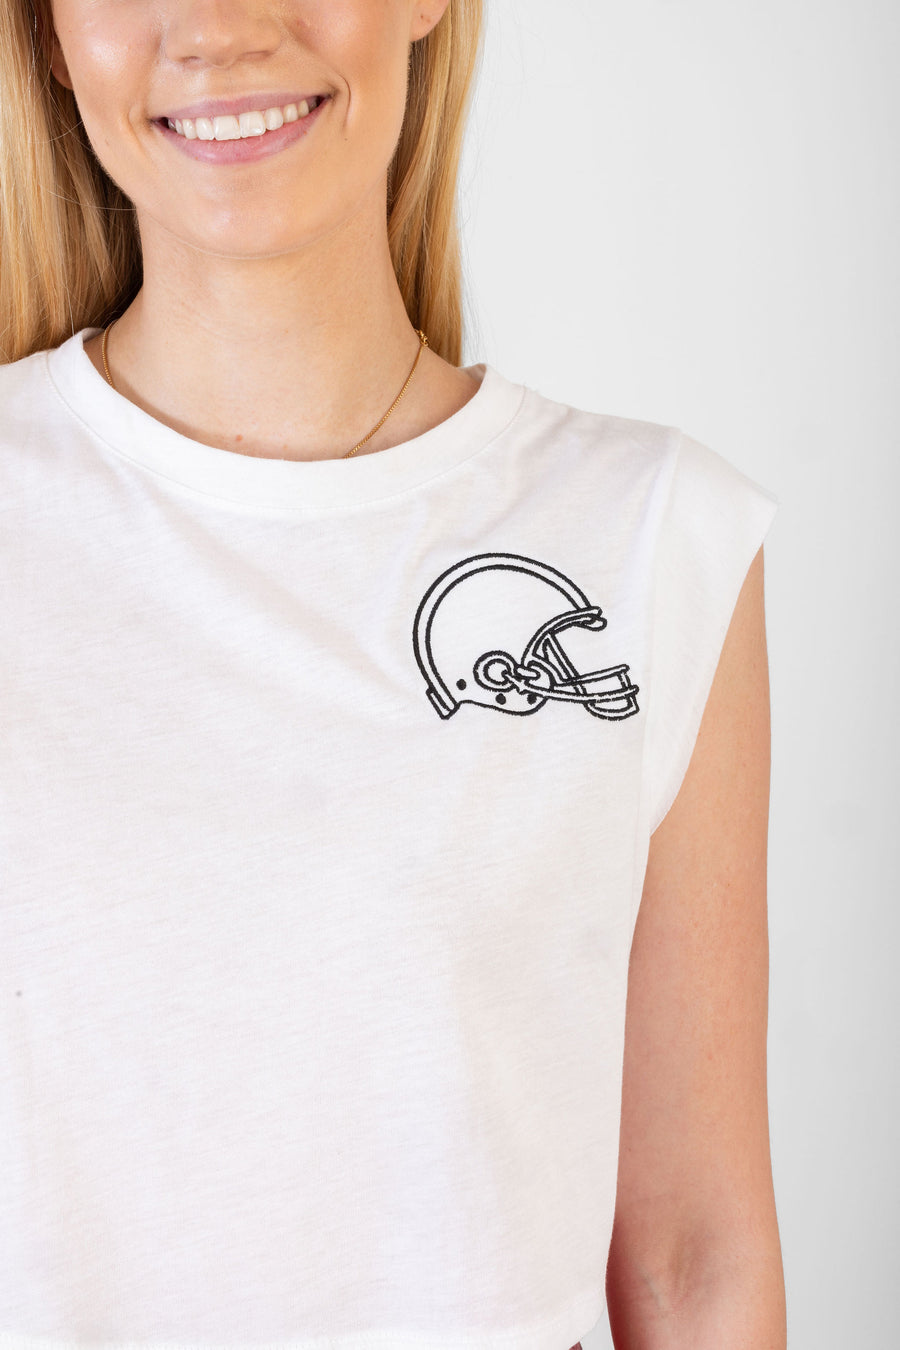 Ava Tee Football Helmet Embroidery *Limited*Edition*